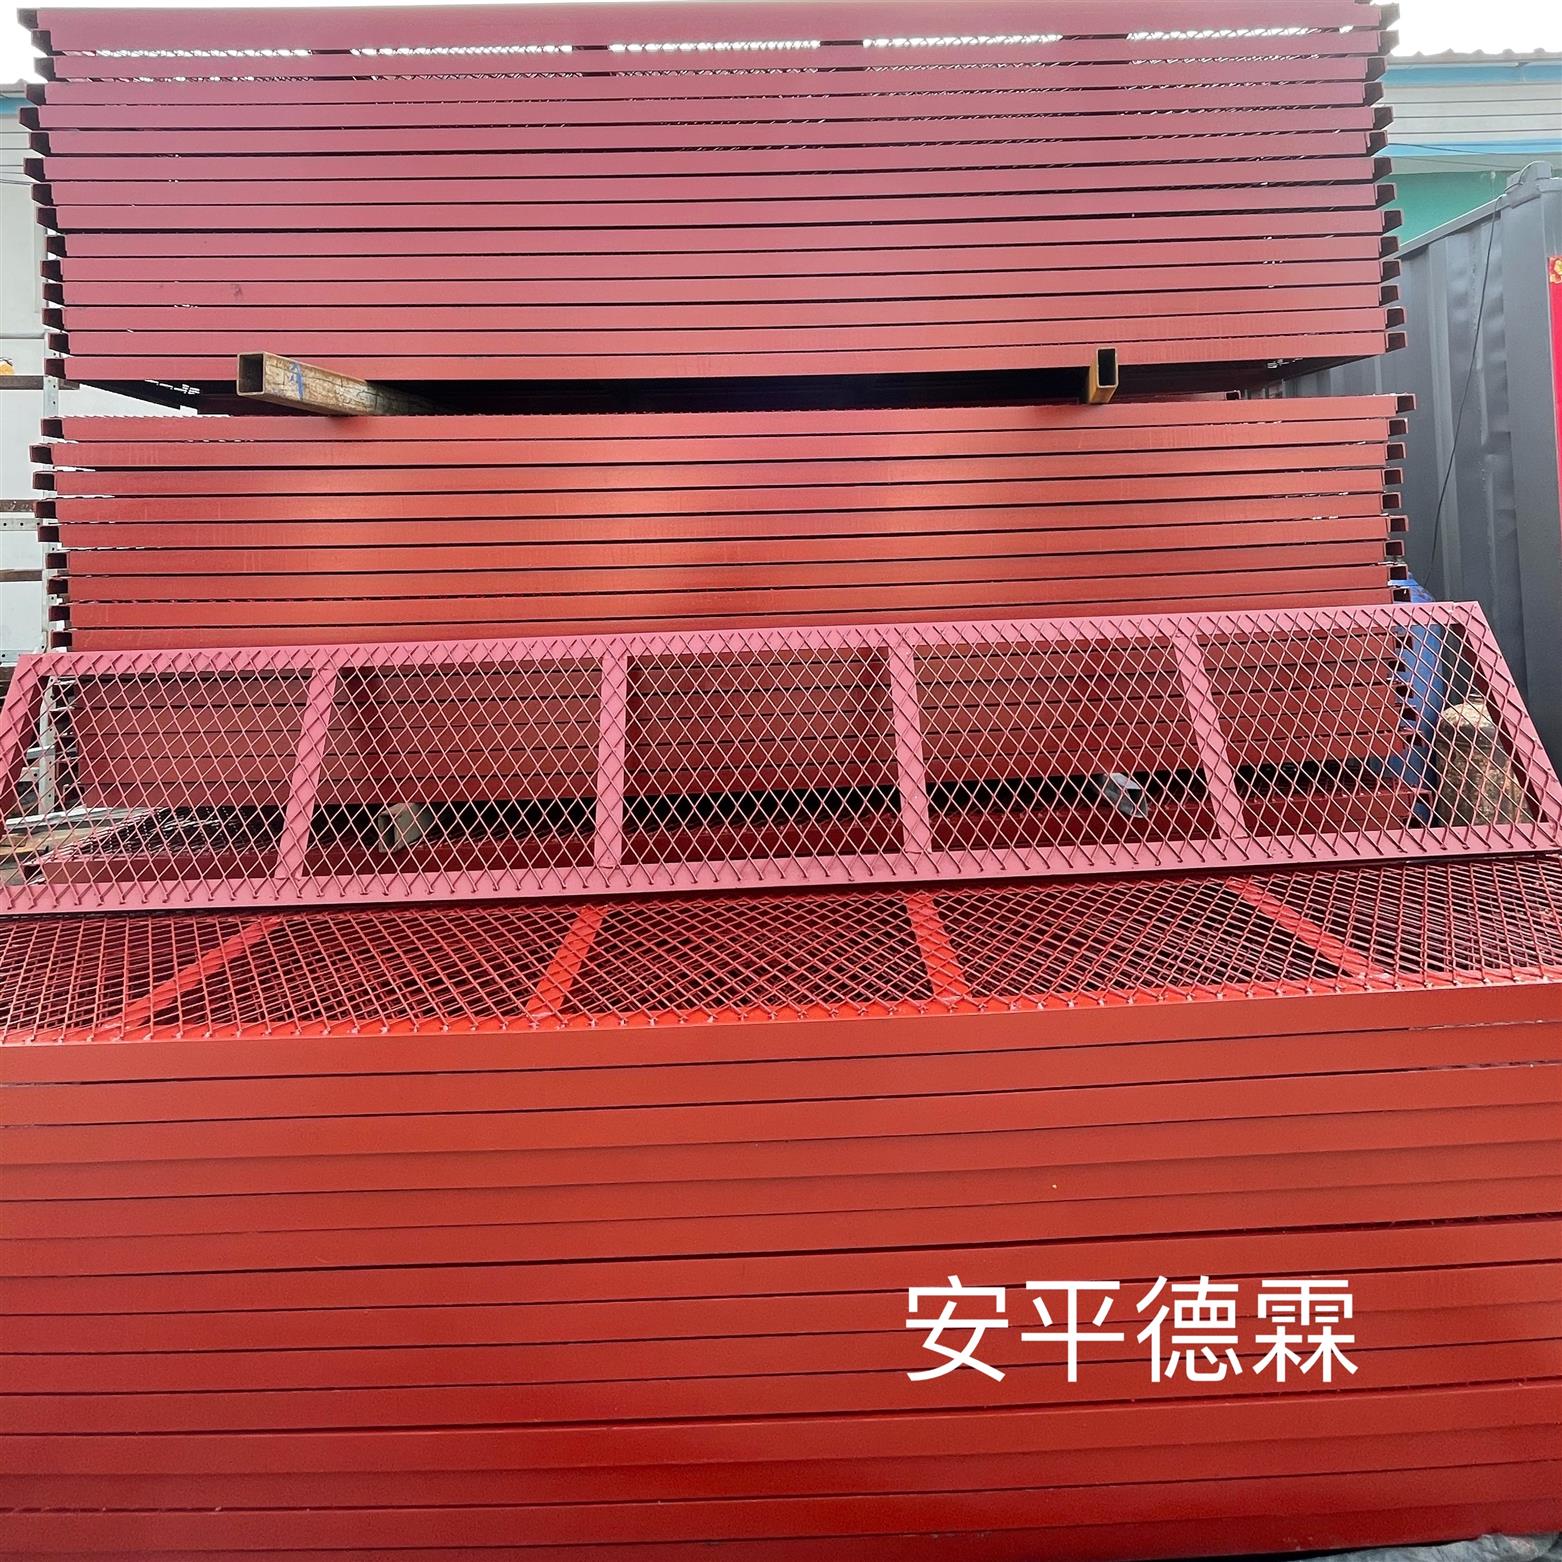 鋼格柵板走道 貴陽紅色盾構地鐵走道板生產廠家